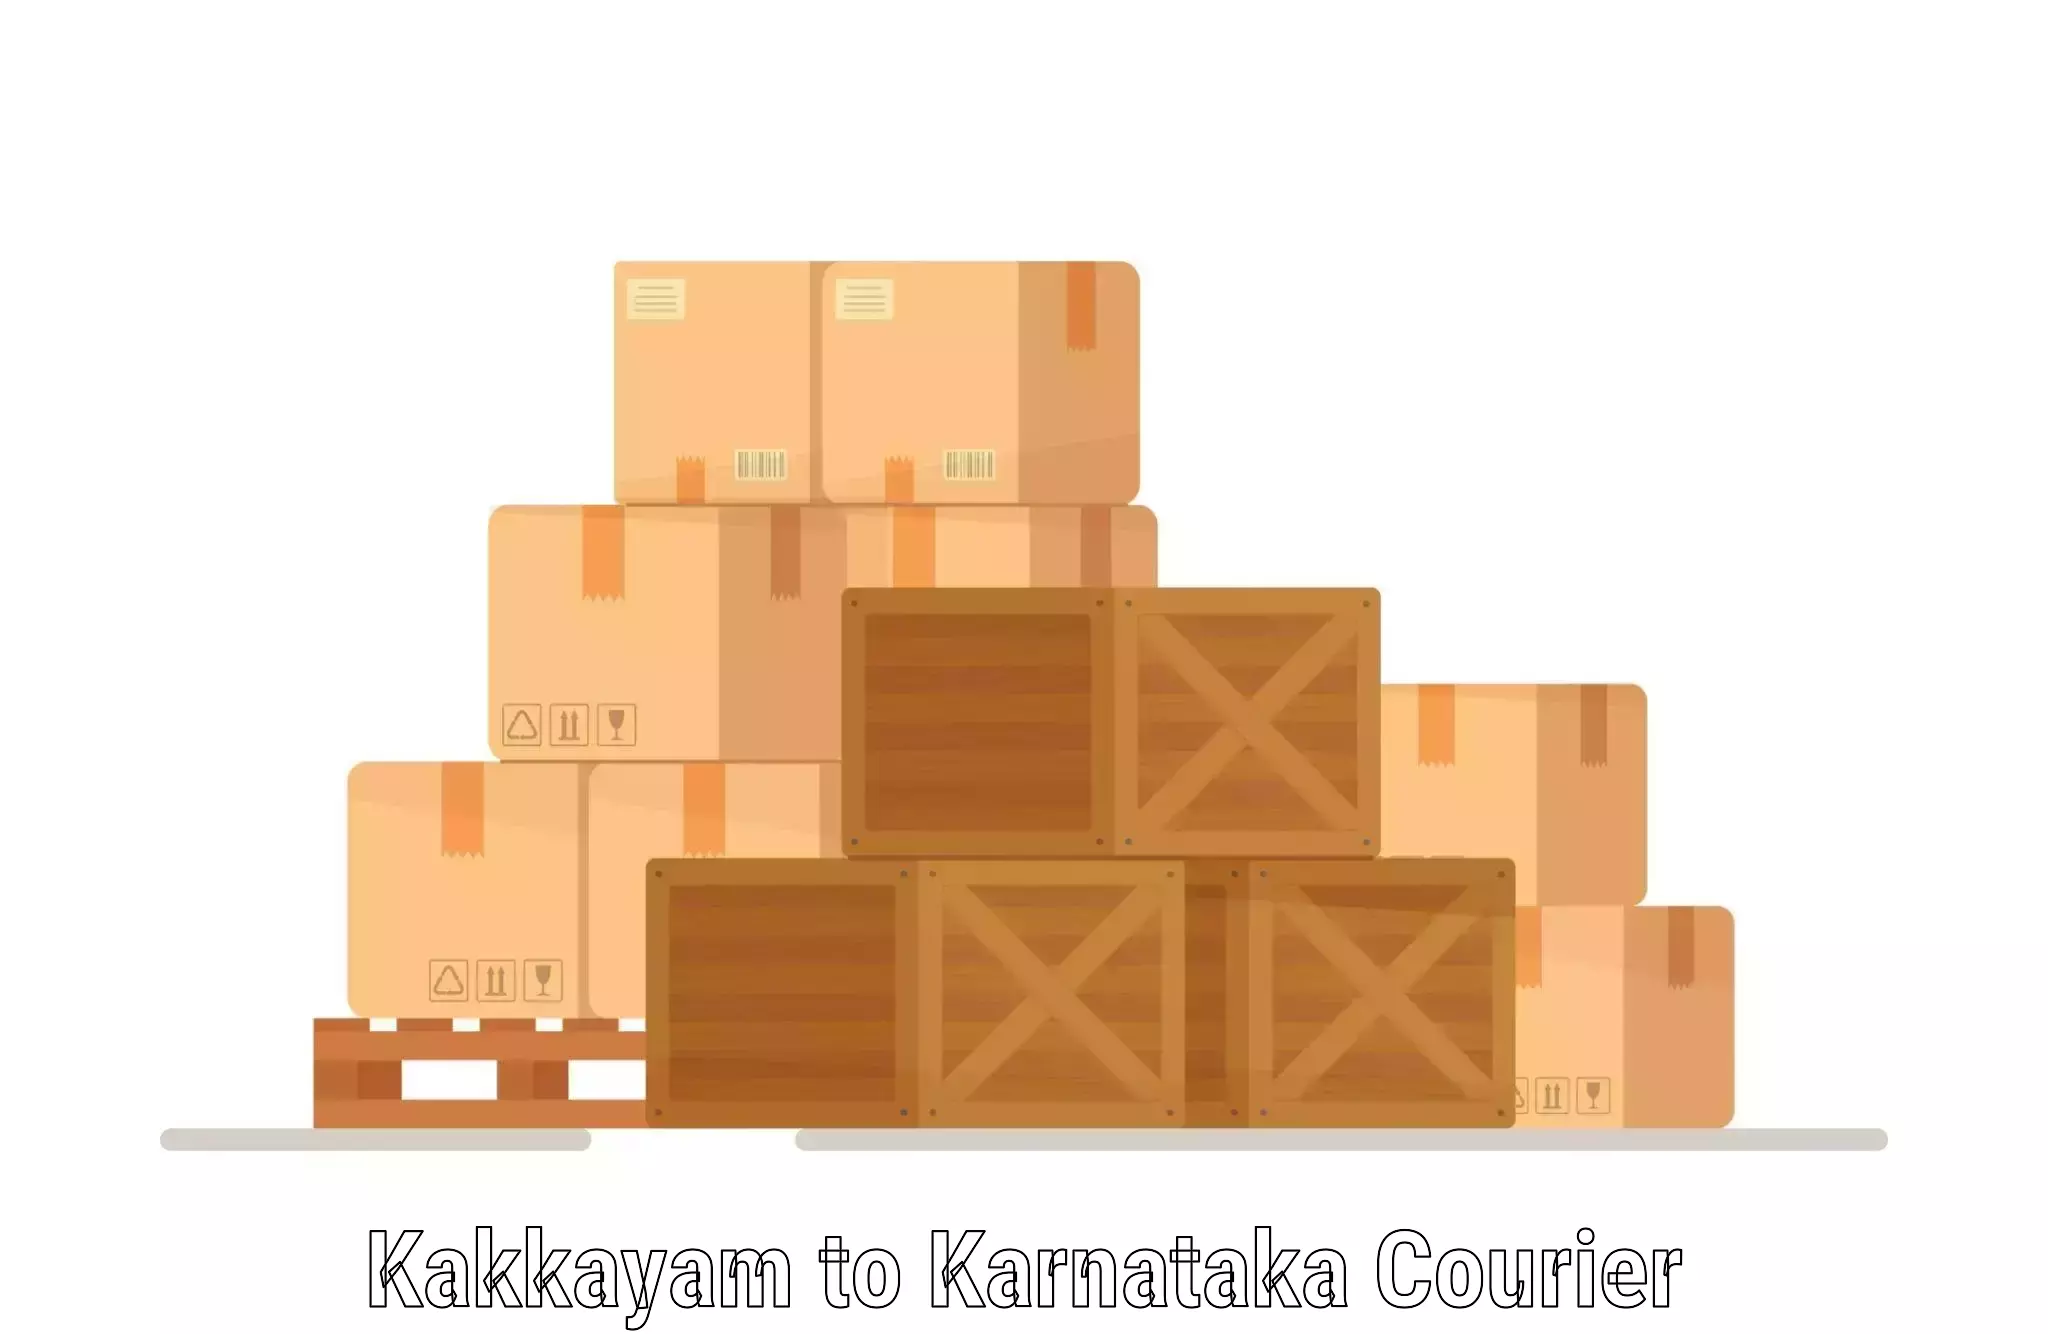 High value parcel delivery Kakkayam to Basavanagudi